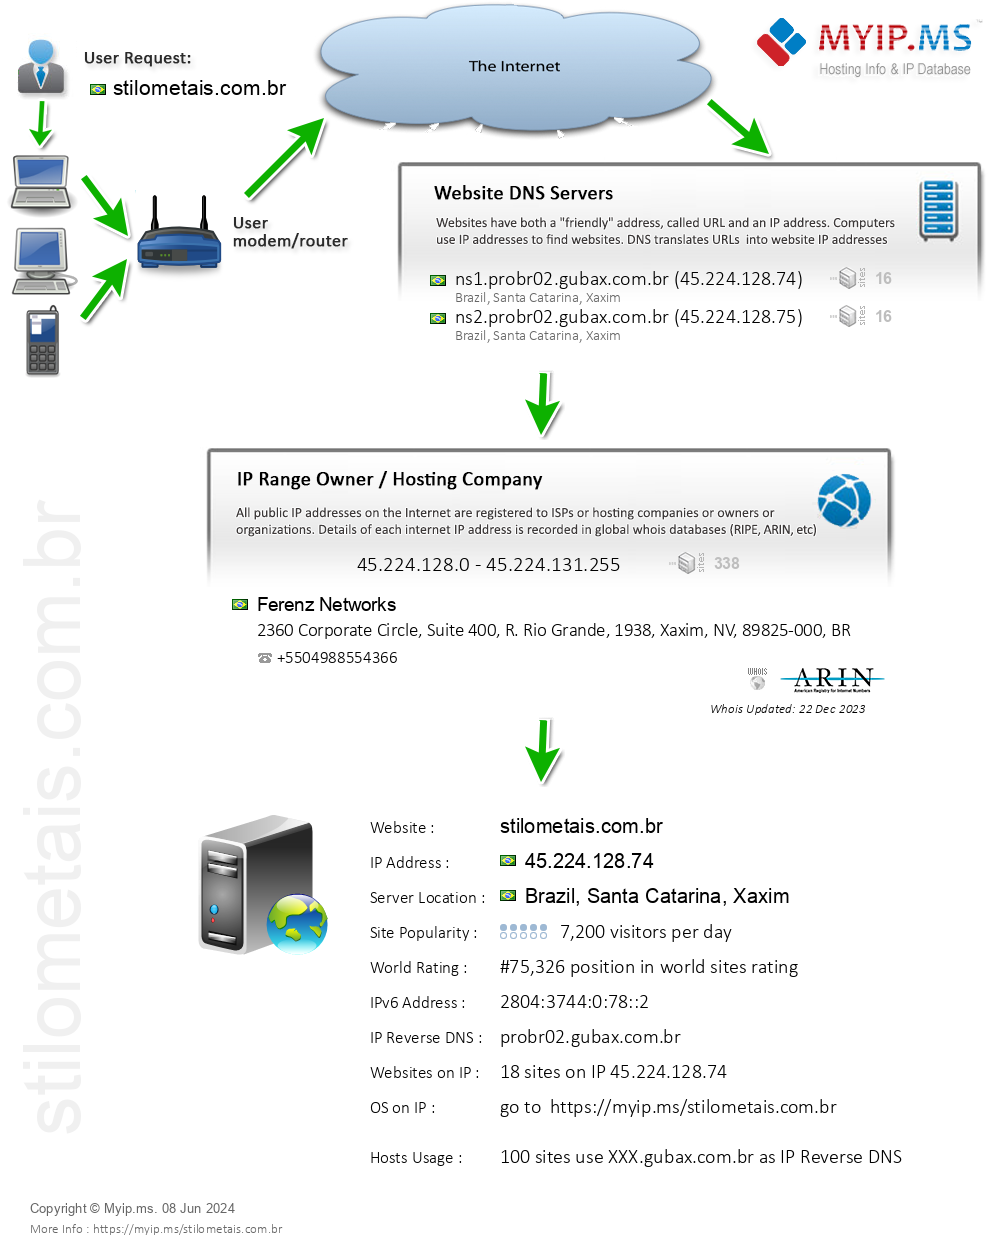 Stilometais.com.br - Website Hosting Visual IP Diagram